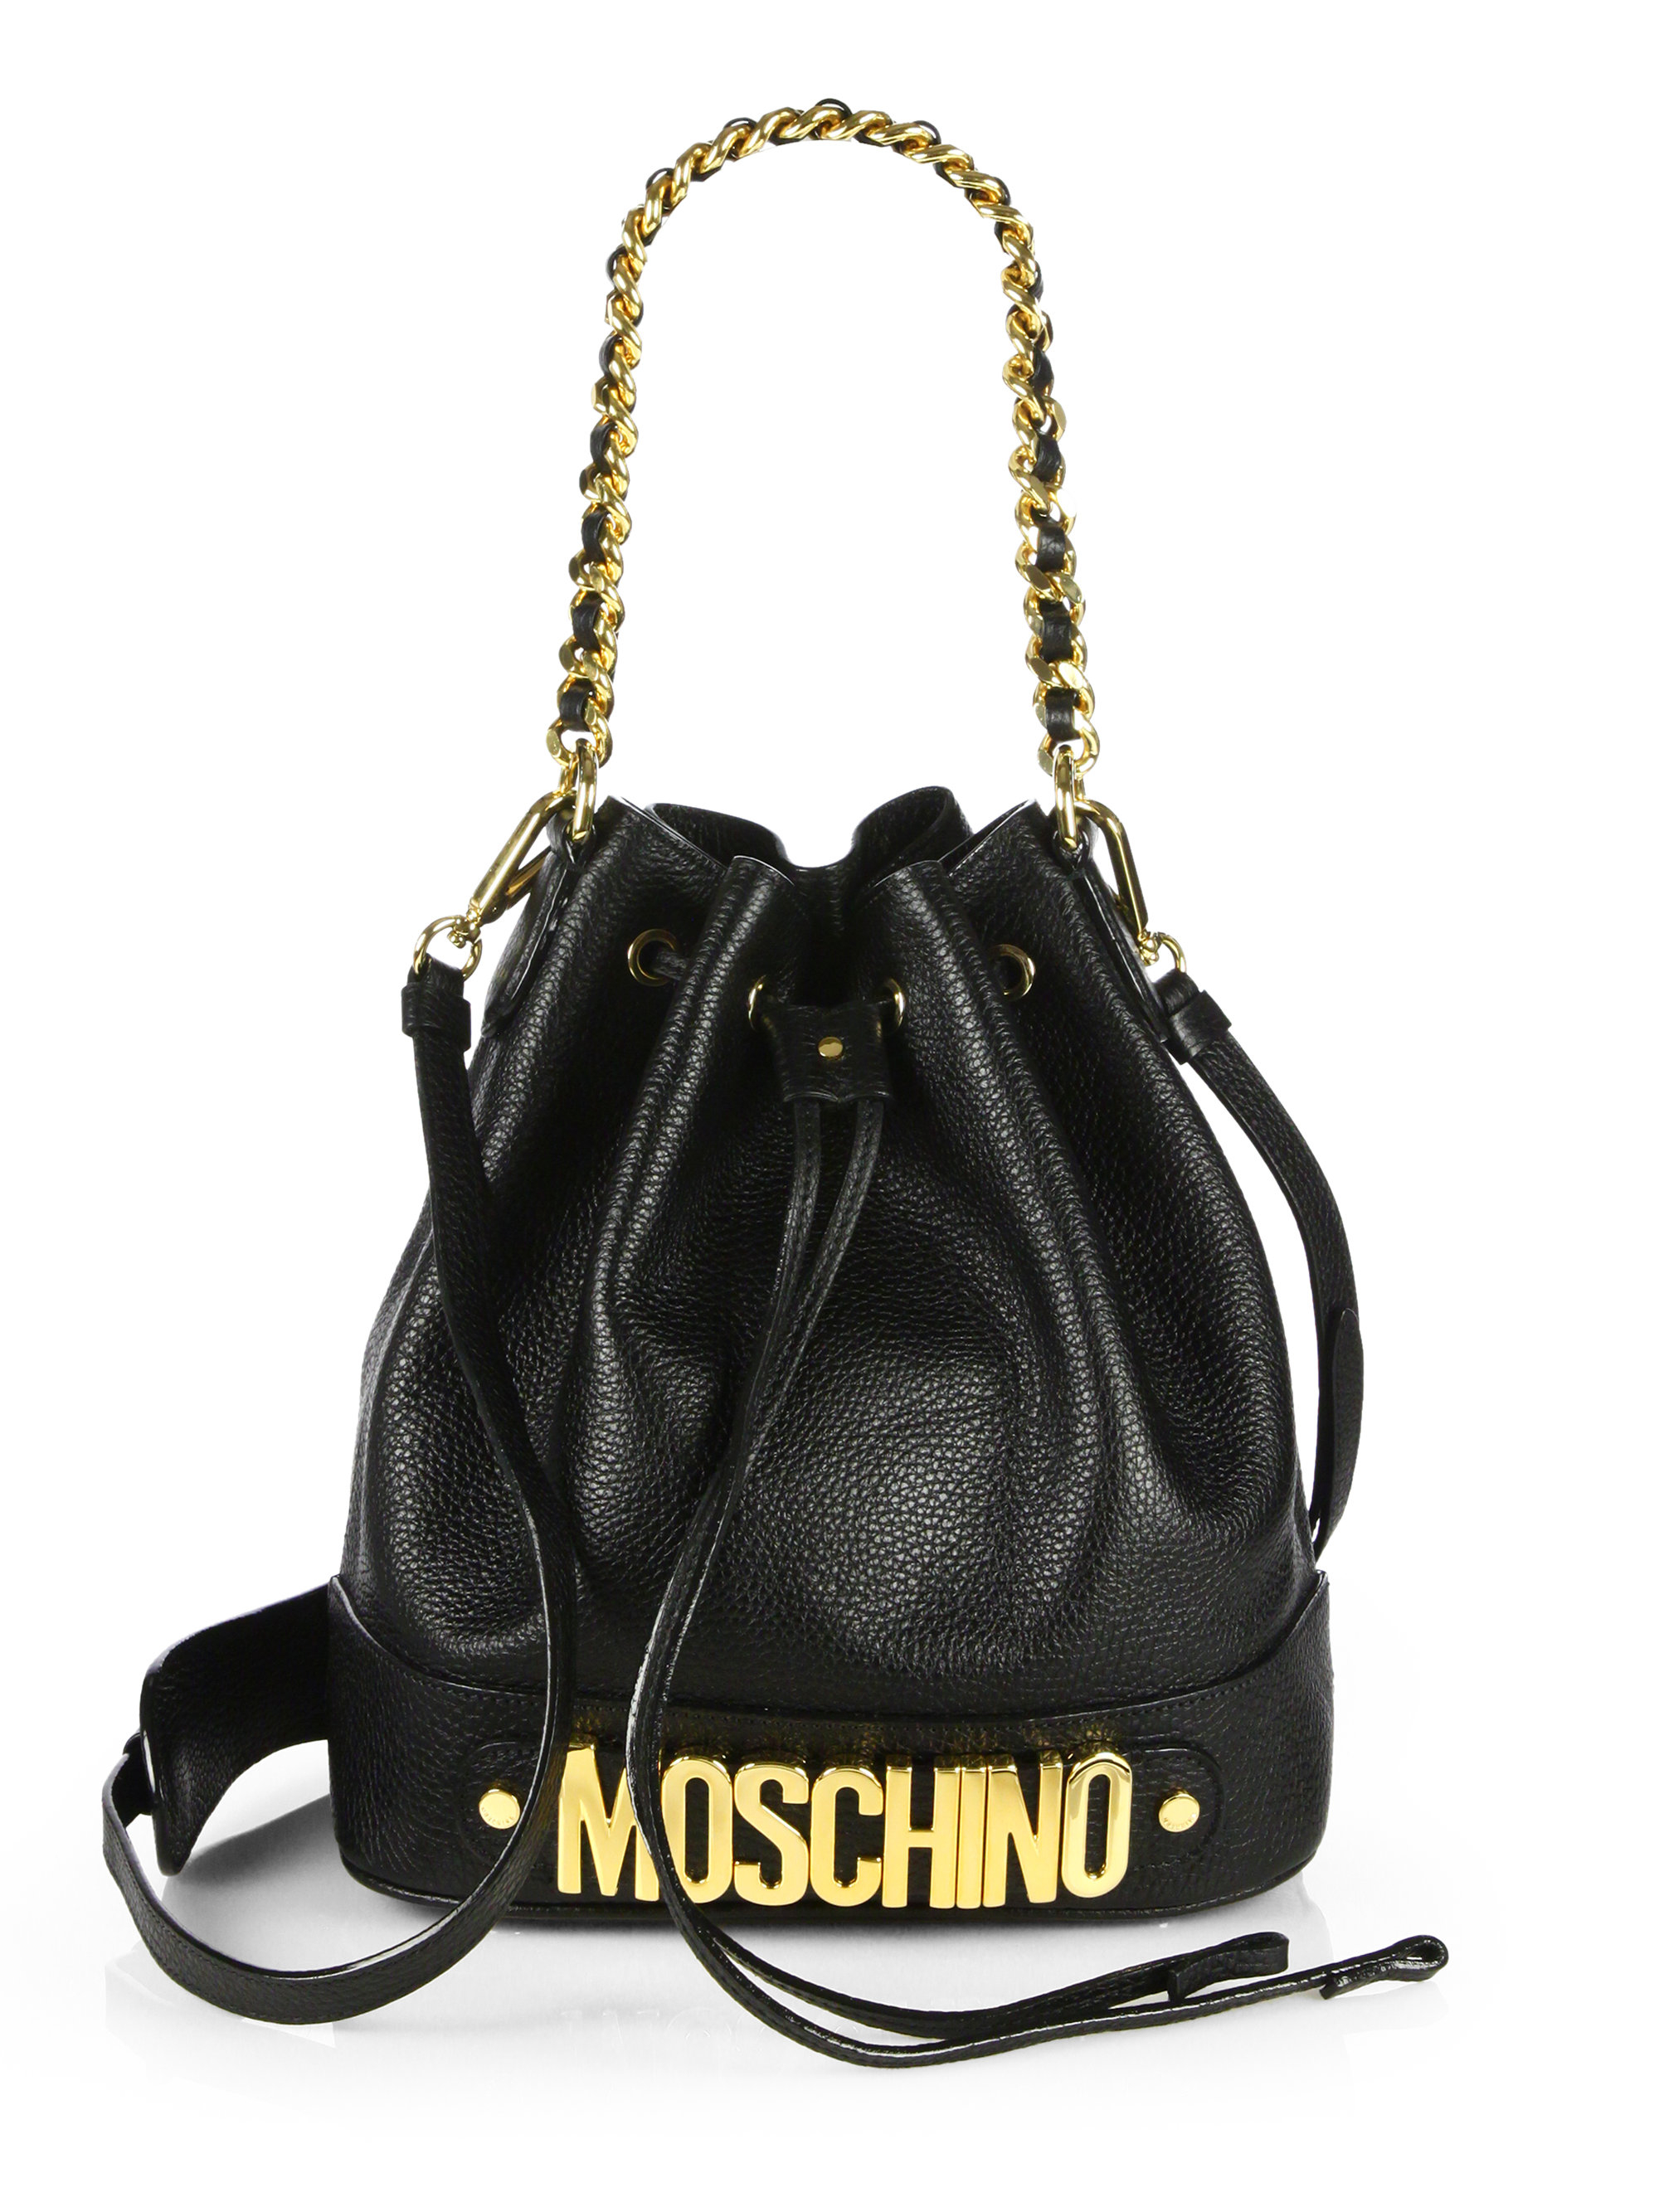 moschino leather bucket bag